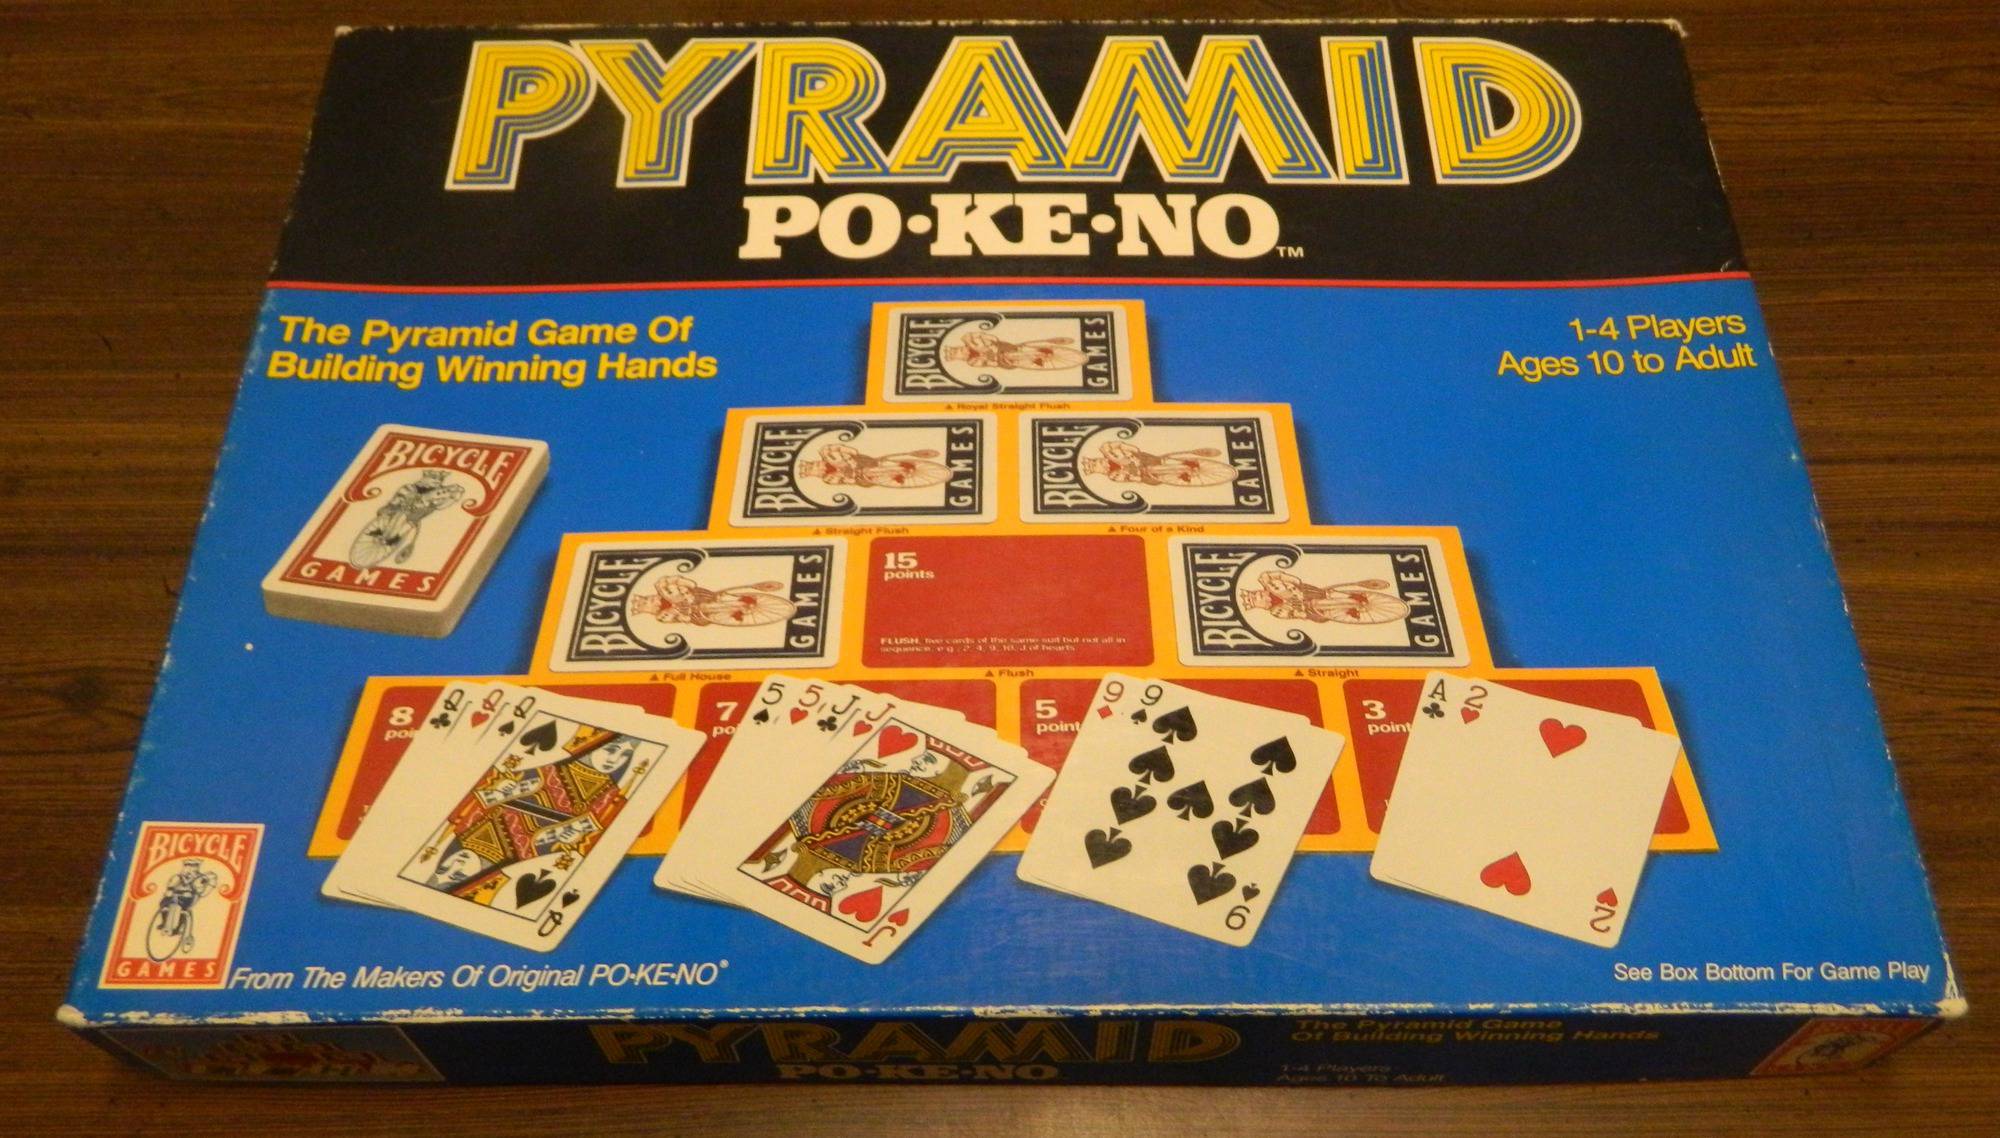 Pyramid Po-Ke-No Board Game Review and Rules